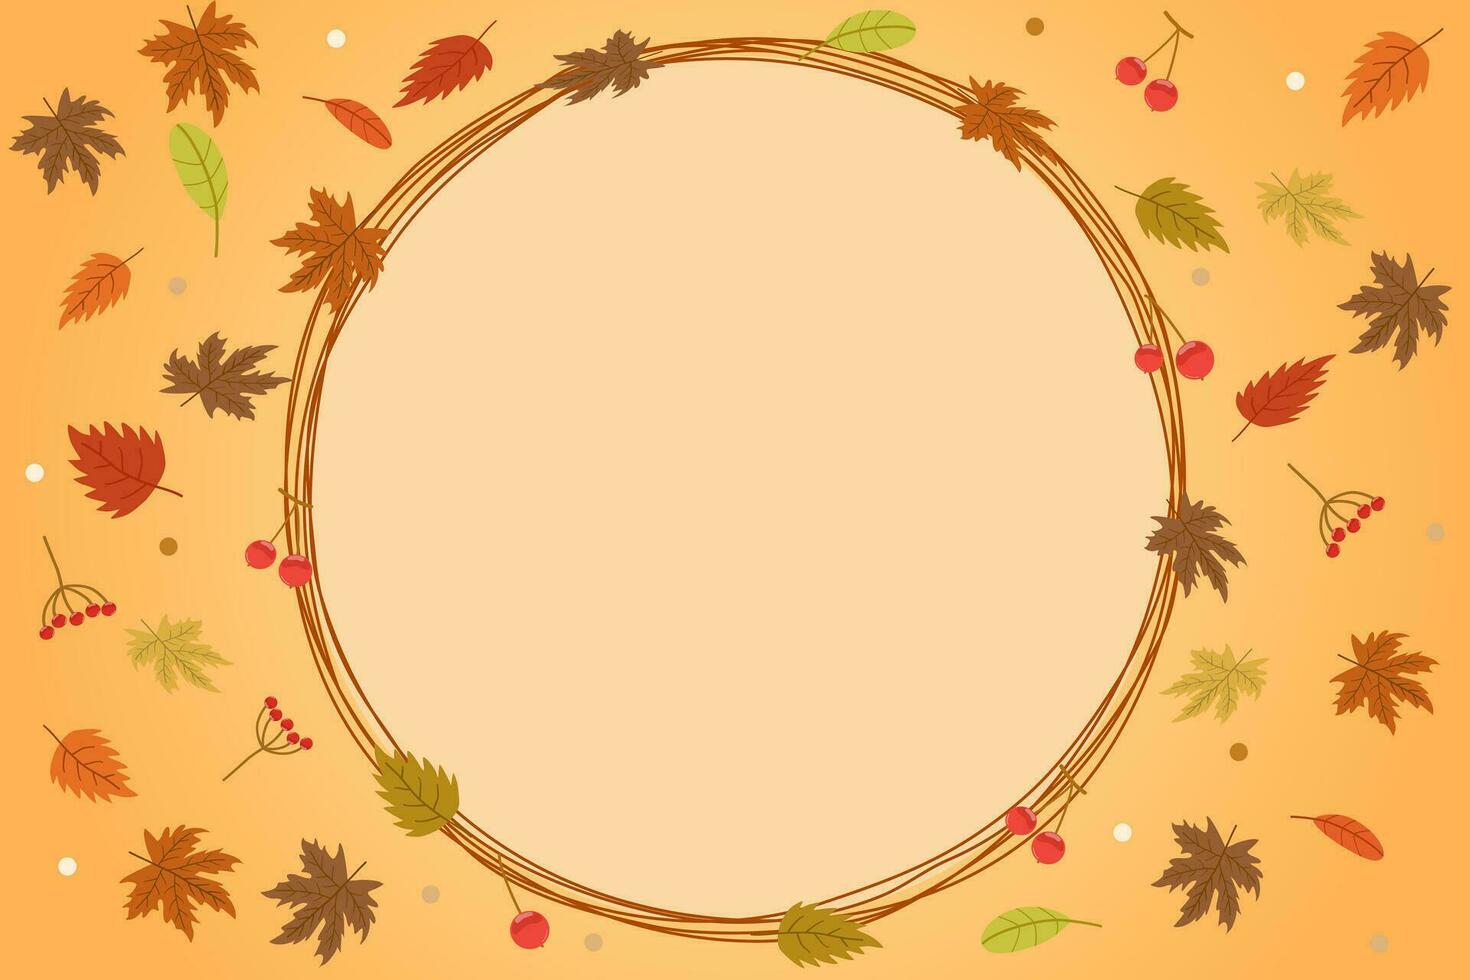 Vector - Cute border or frame on autumn season concept.